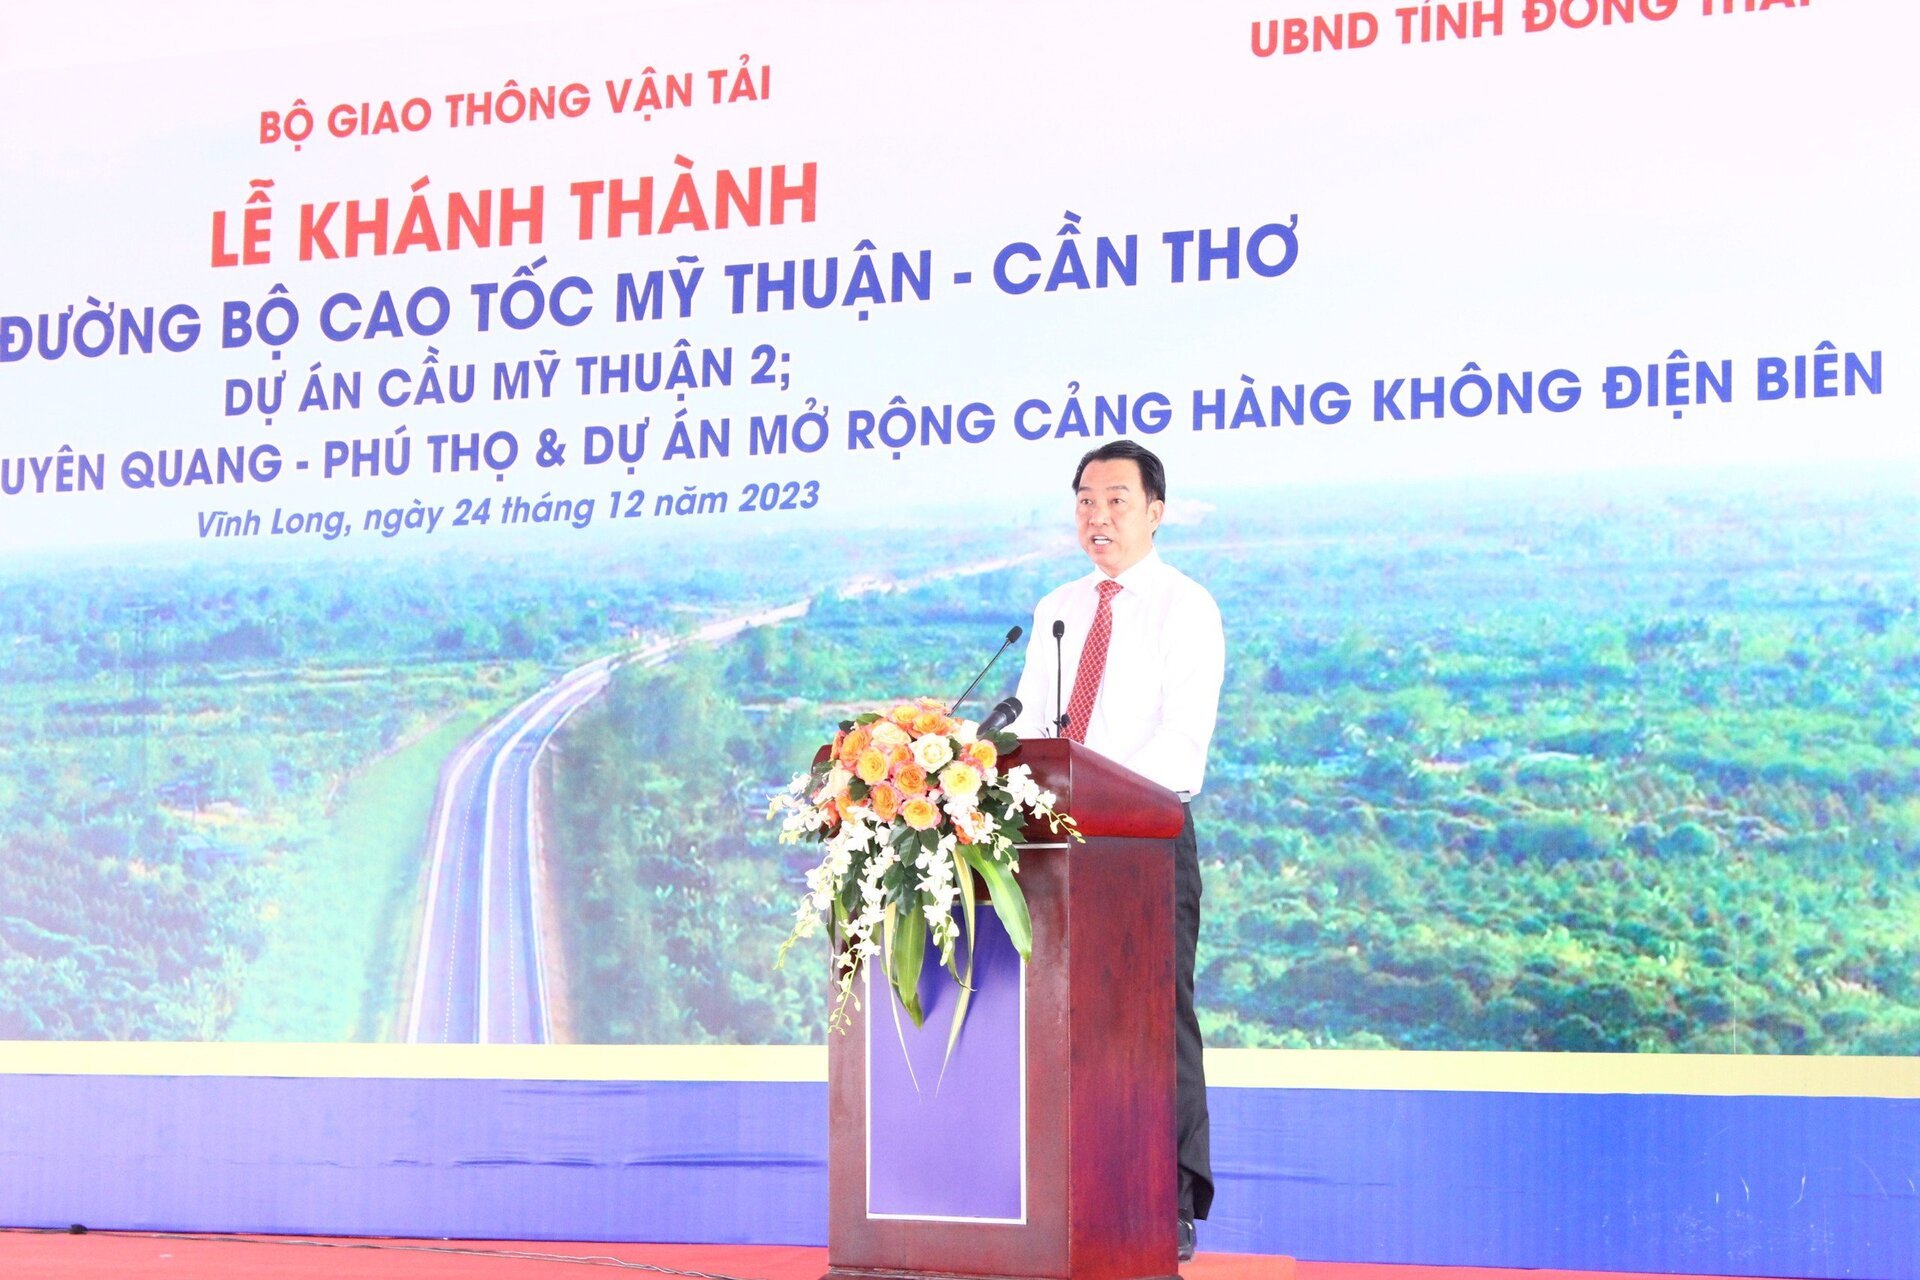 Ông Lữ Quang Ngời, Chủ tịch UBND tỉnh Vĩnh Long khẳng định tại buổi lễ khánh thành dự án cao tốc Mỹ Thuận – Cần Thơ